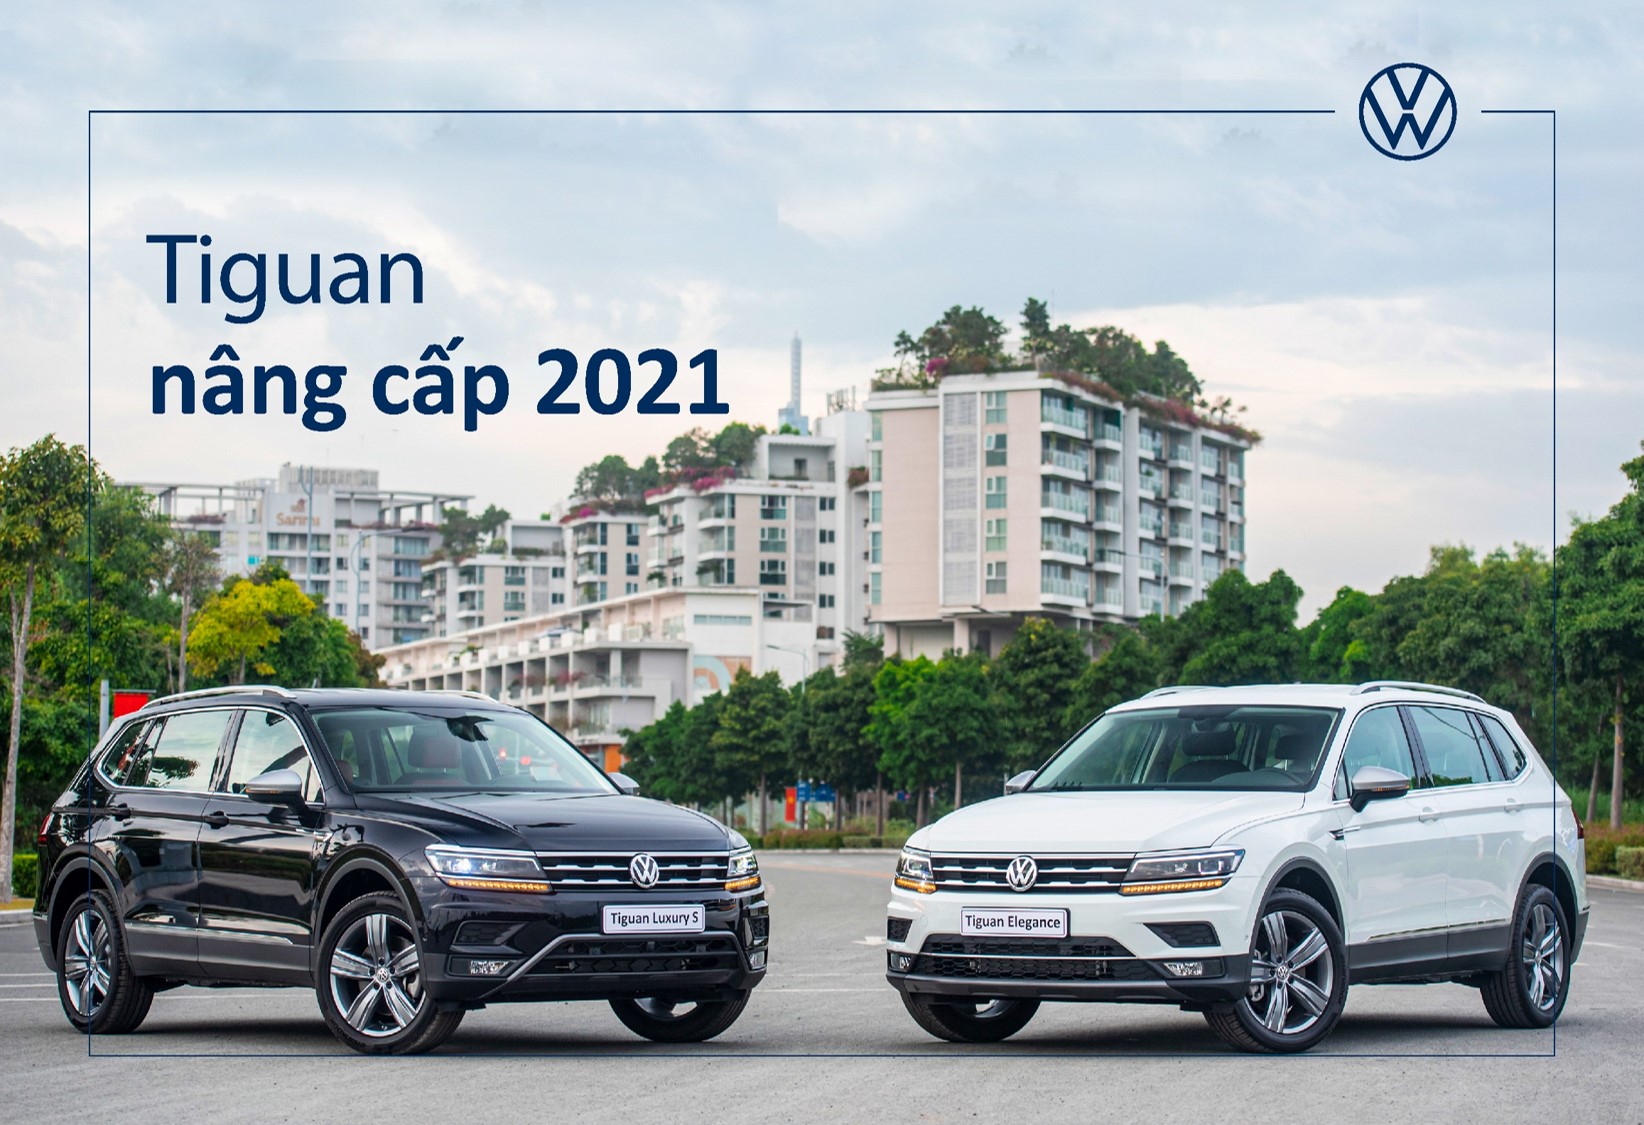 Volkswagen Chính Thức Ra Mắt Tiguan Nâng Cấp 2021 Với 2 Phiên Bản Tại Việt Nam